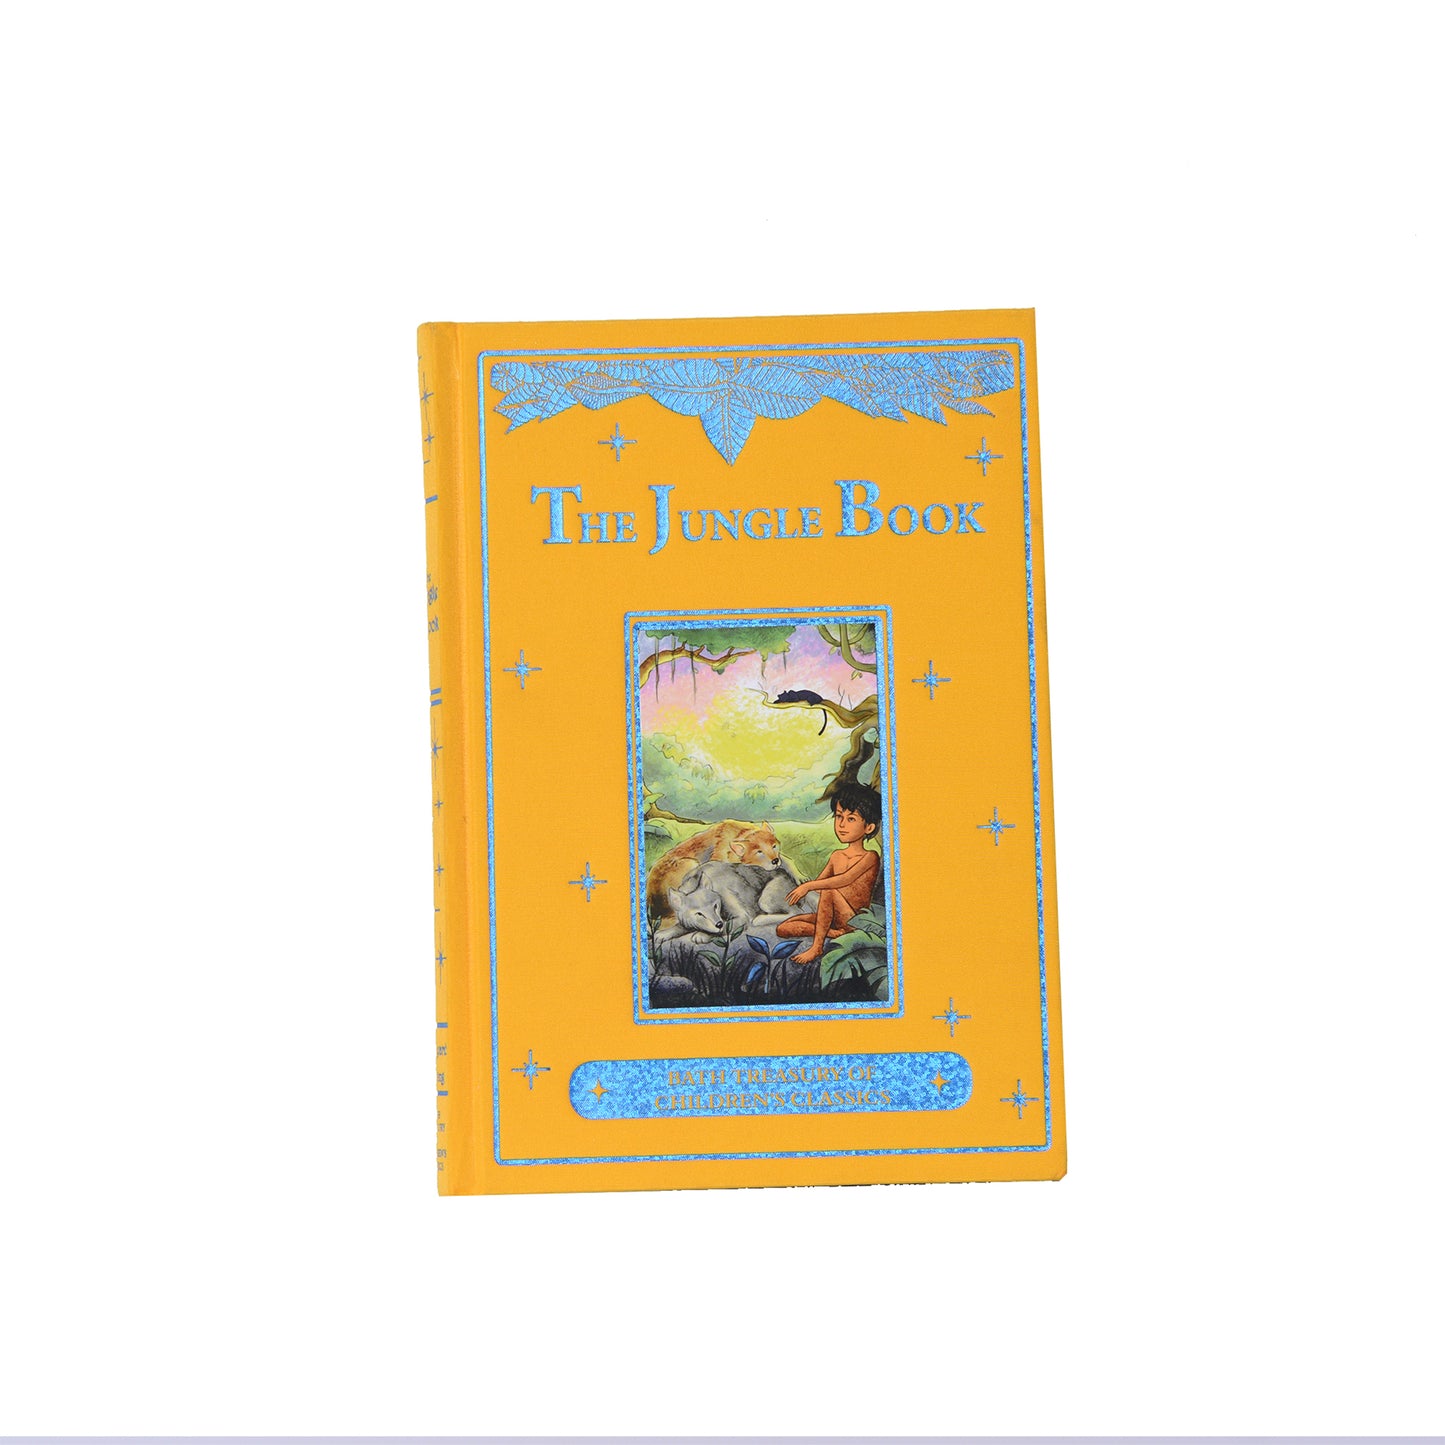 The Jungle Book Bath Treasury of Children's Classics) (Bath Classics) Hardcover